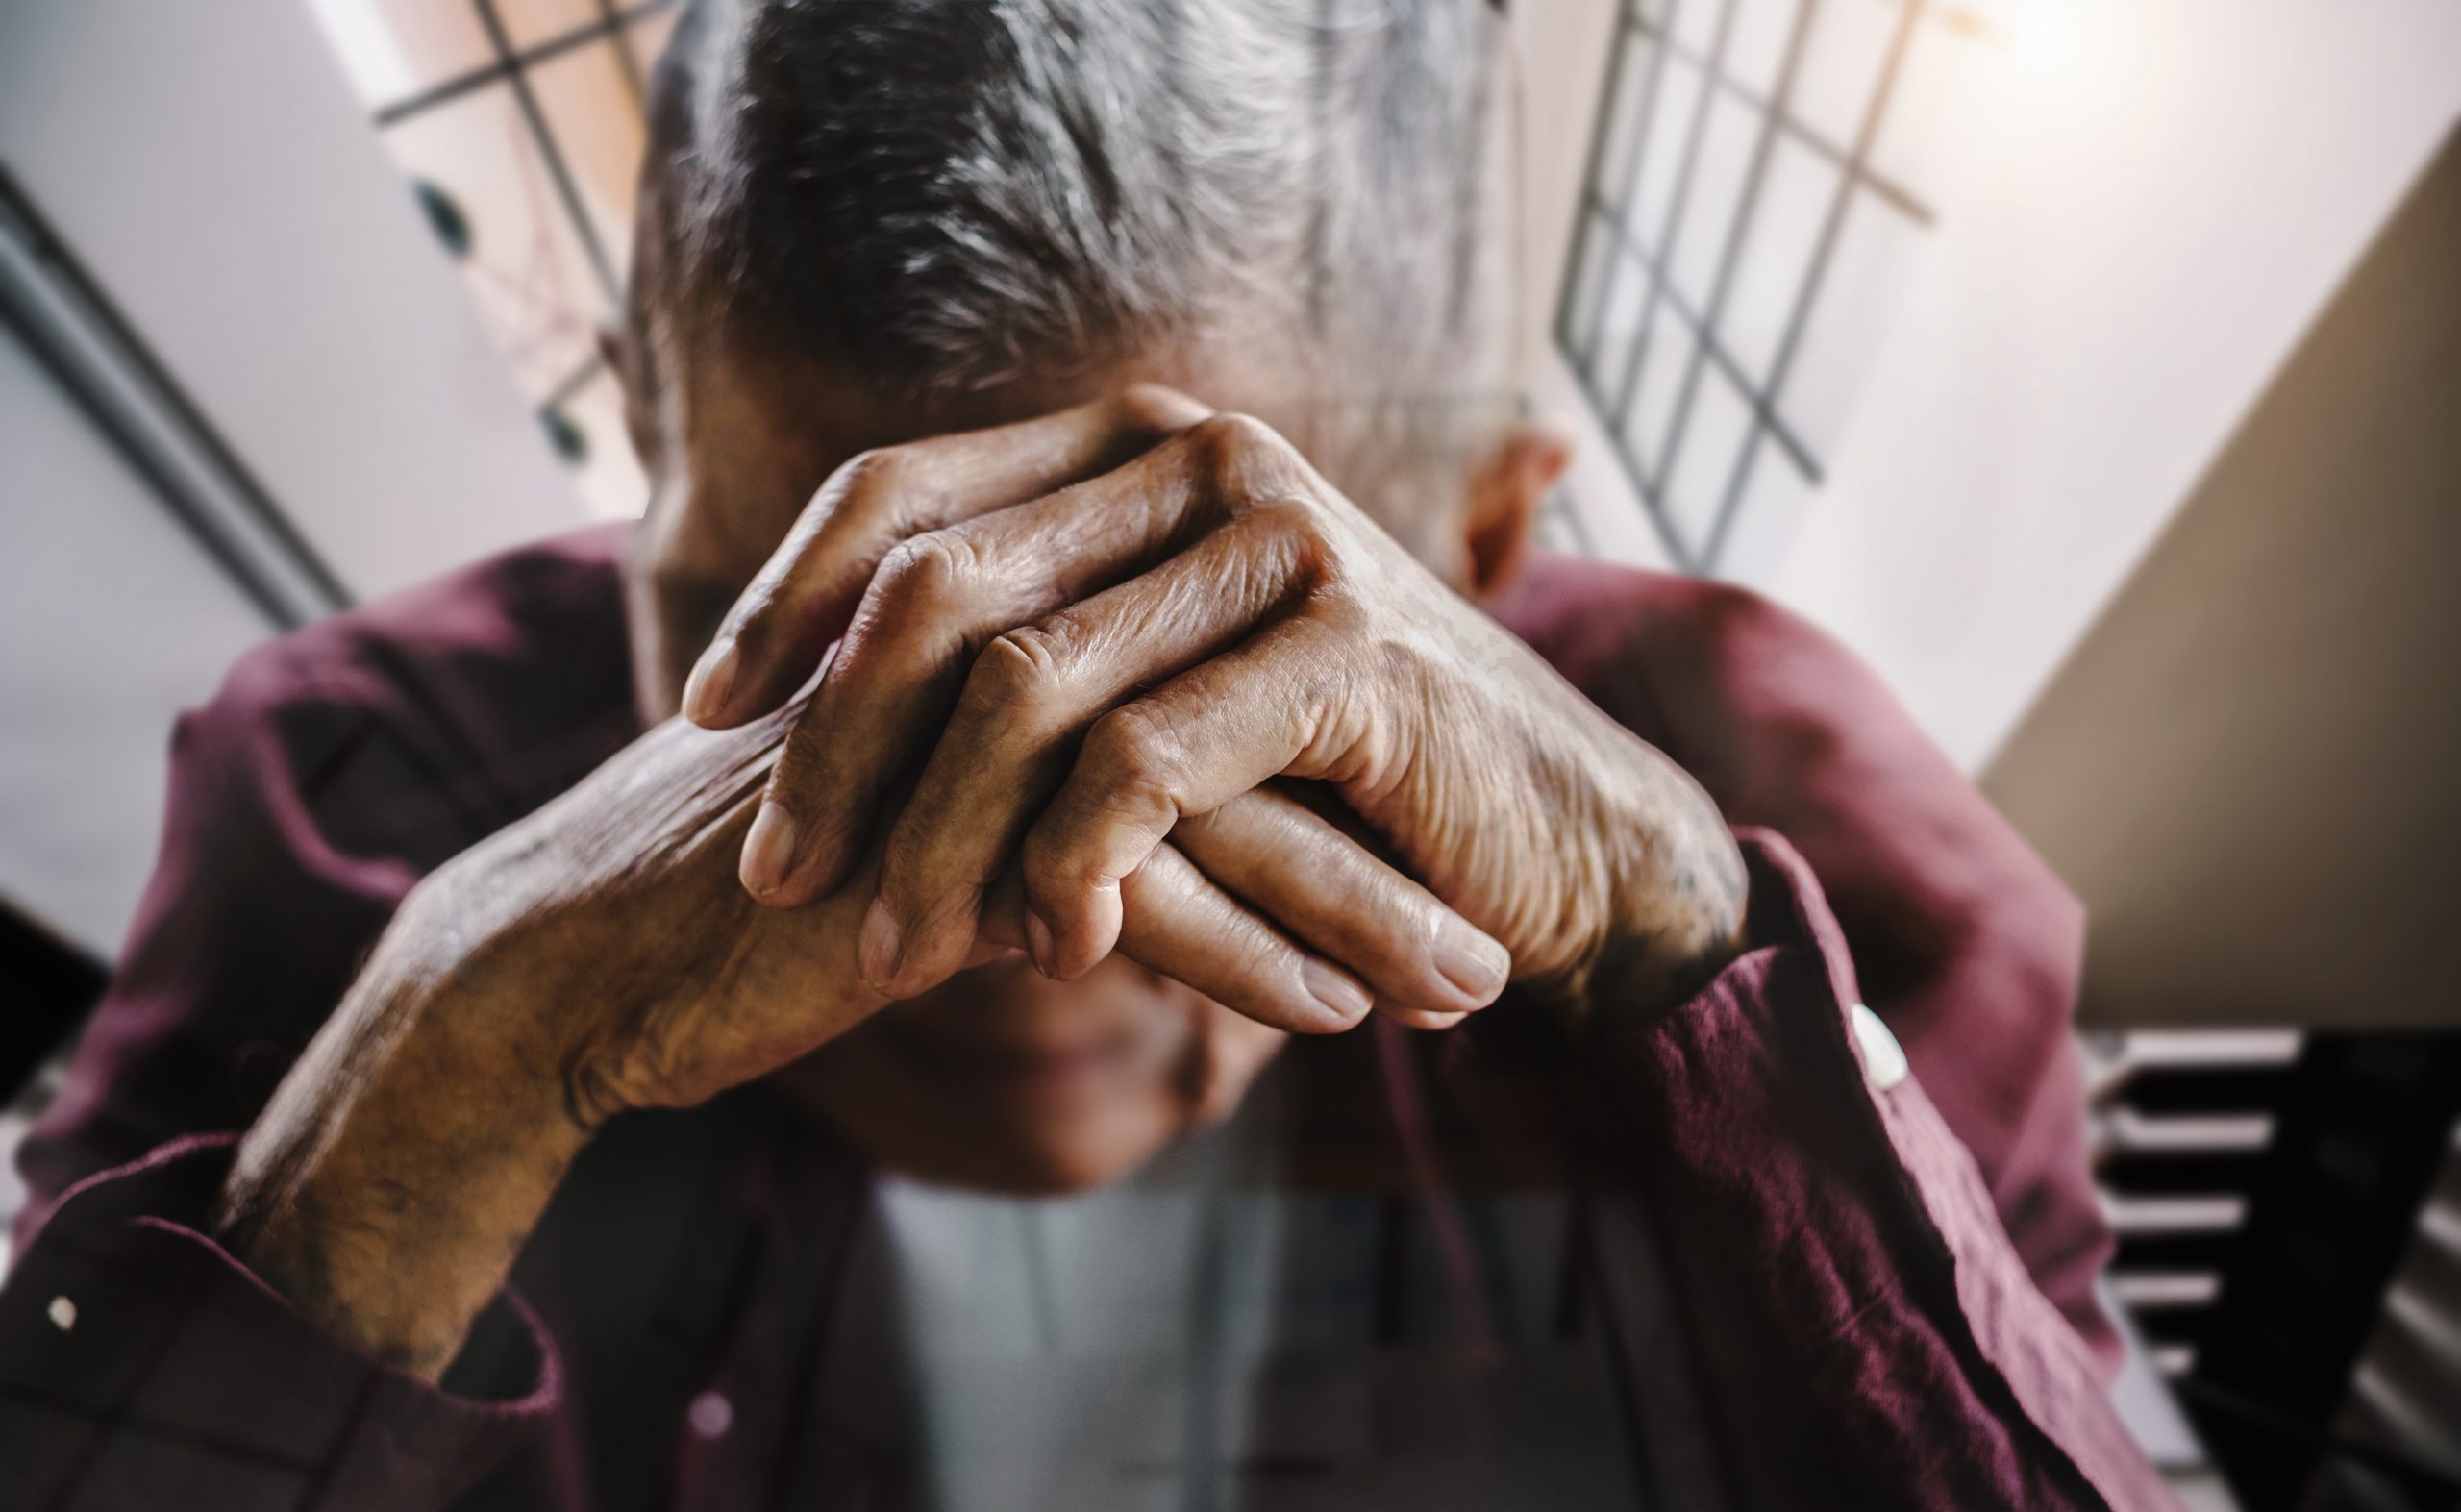 Casa de ancianos ‘ilegal’ que albergaba expatriados es cerrada en la Costa Blanca de España: propietaria suiza es arrestada